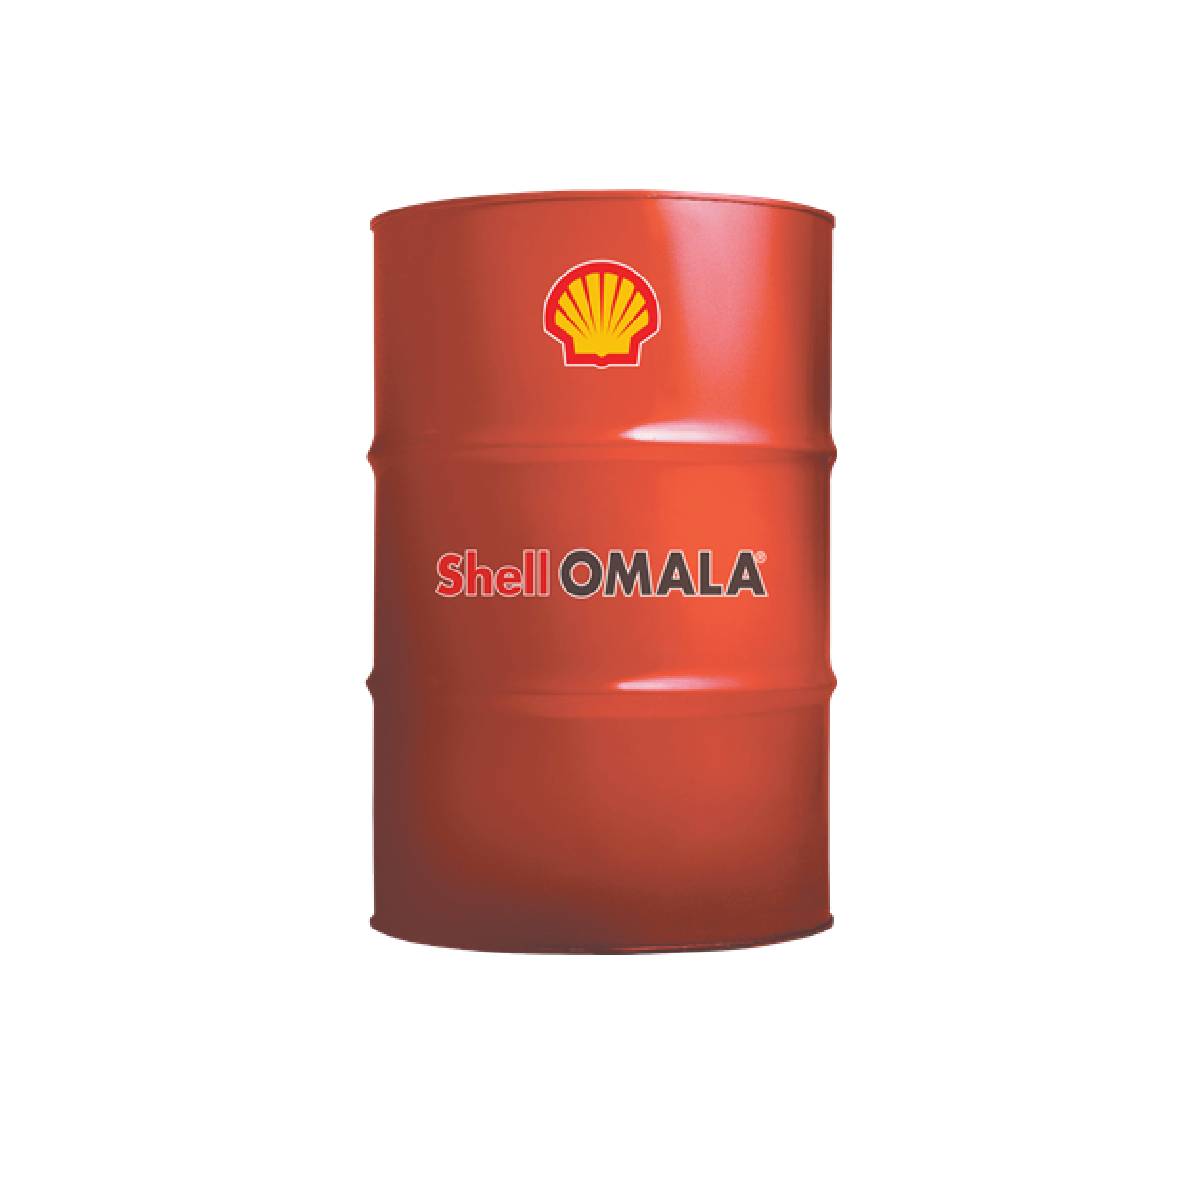 OMALA S4 GXV 220 (OMALA HD 220) - Crescent Oil